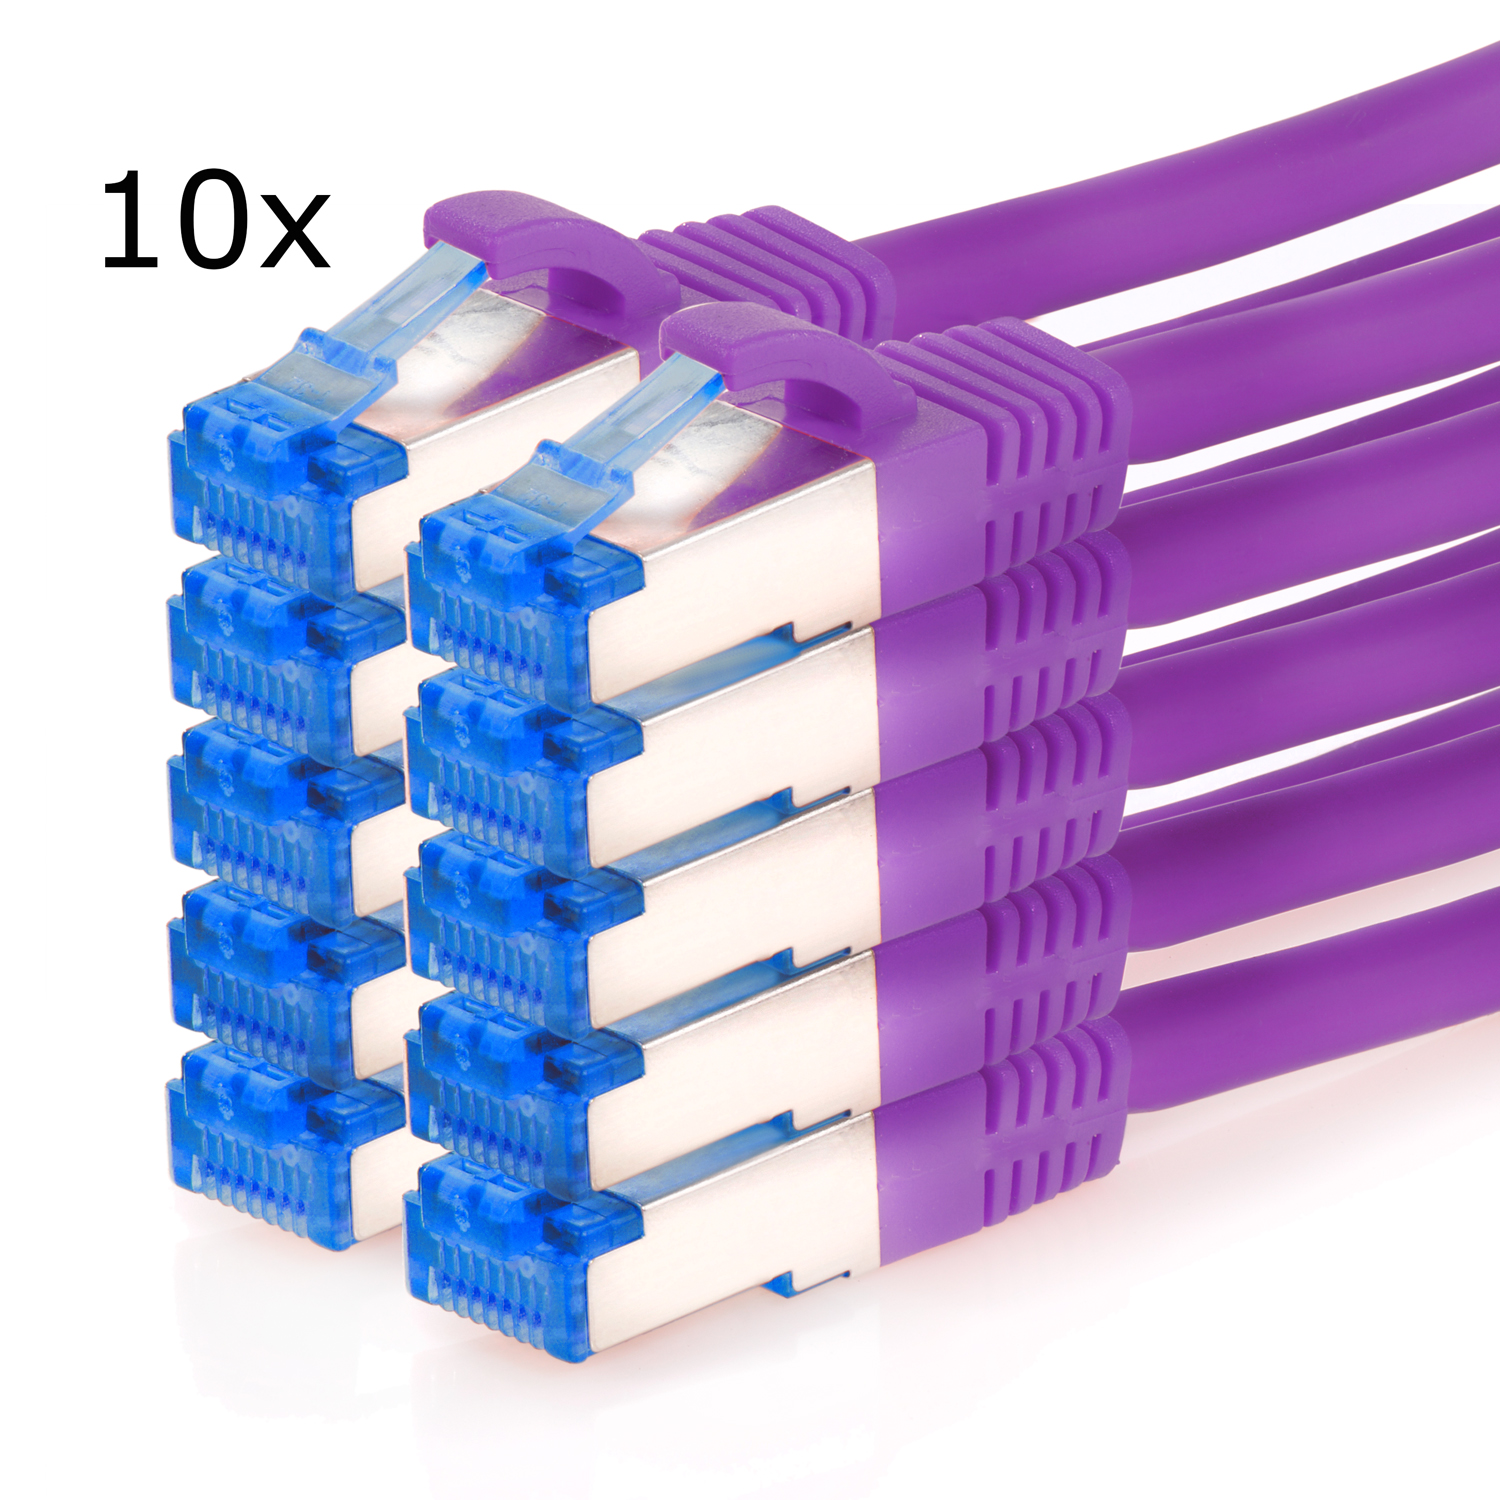 S/FTP violett, TPFNET 10GBit, 10er Pack Patchkabel Netzwerkkabel, / m 1,5m Netzwerkkabel 1,5